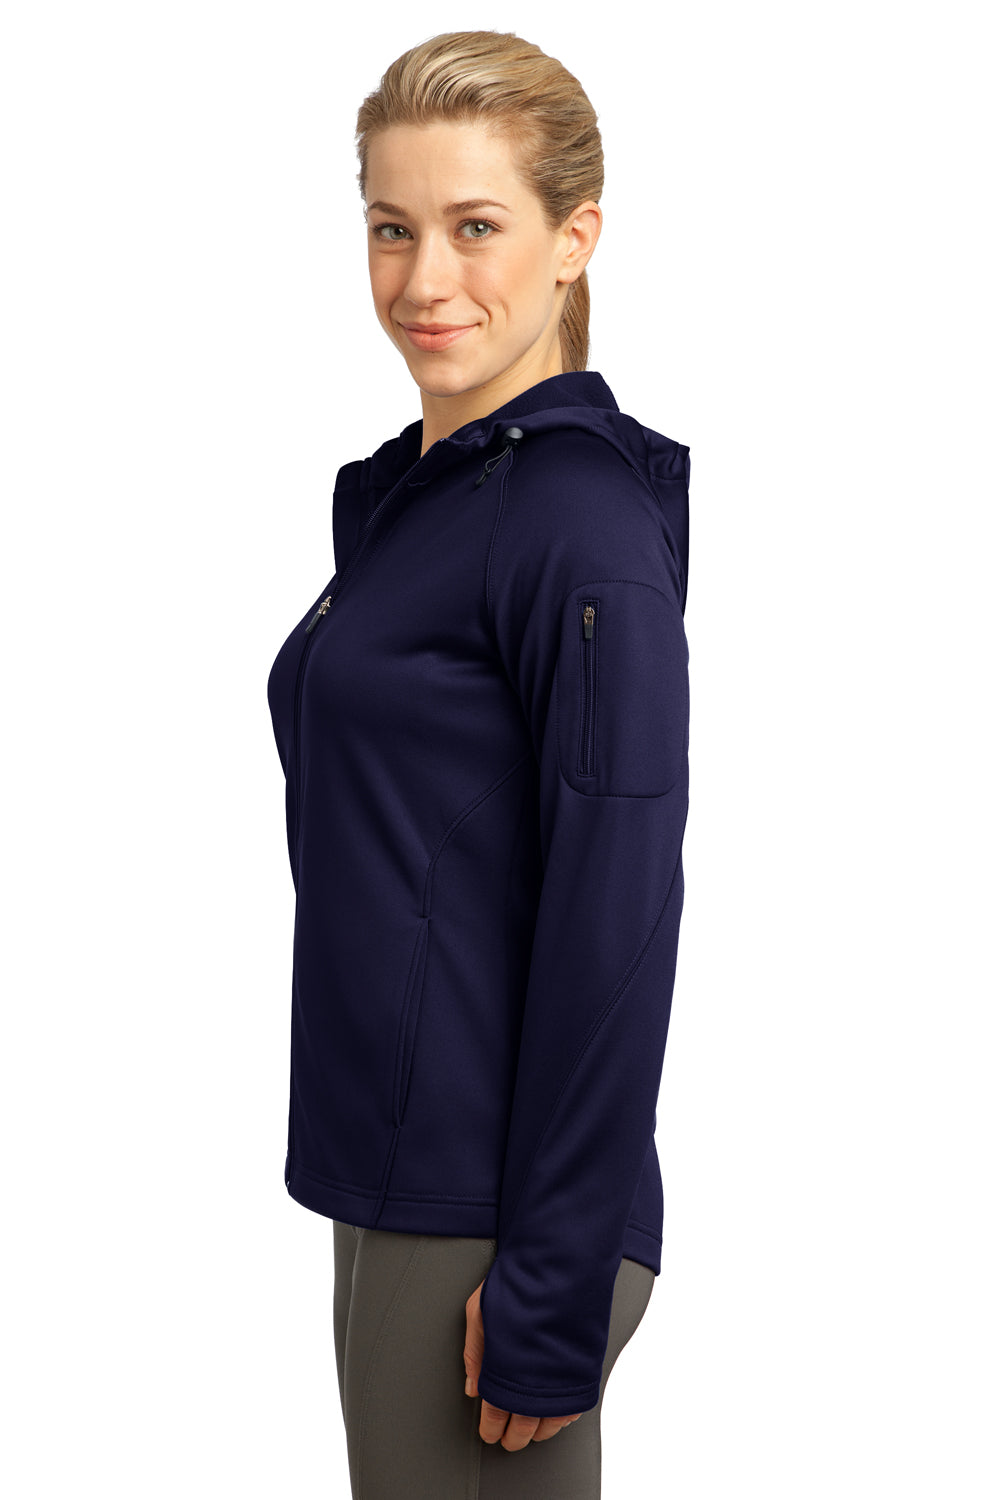 Sport-Tek L248 Womens Tech Moisture Wicking Fleece Full Zip Hooded Sweatshirt Hoodie Navy Blue Side